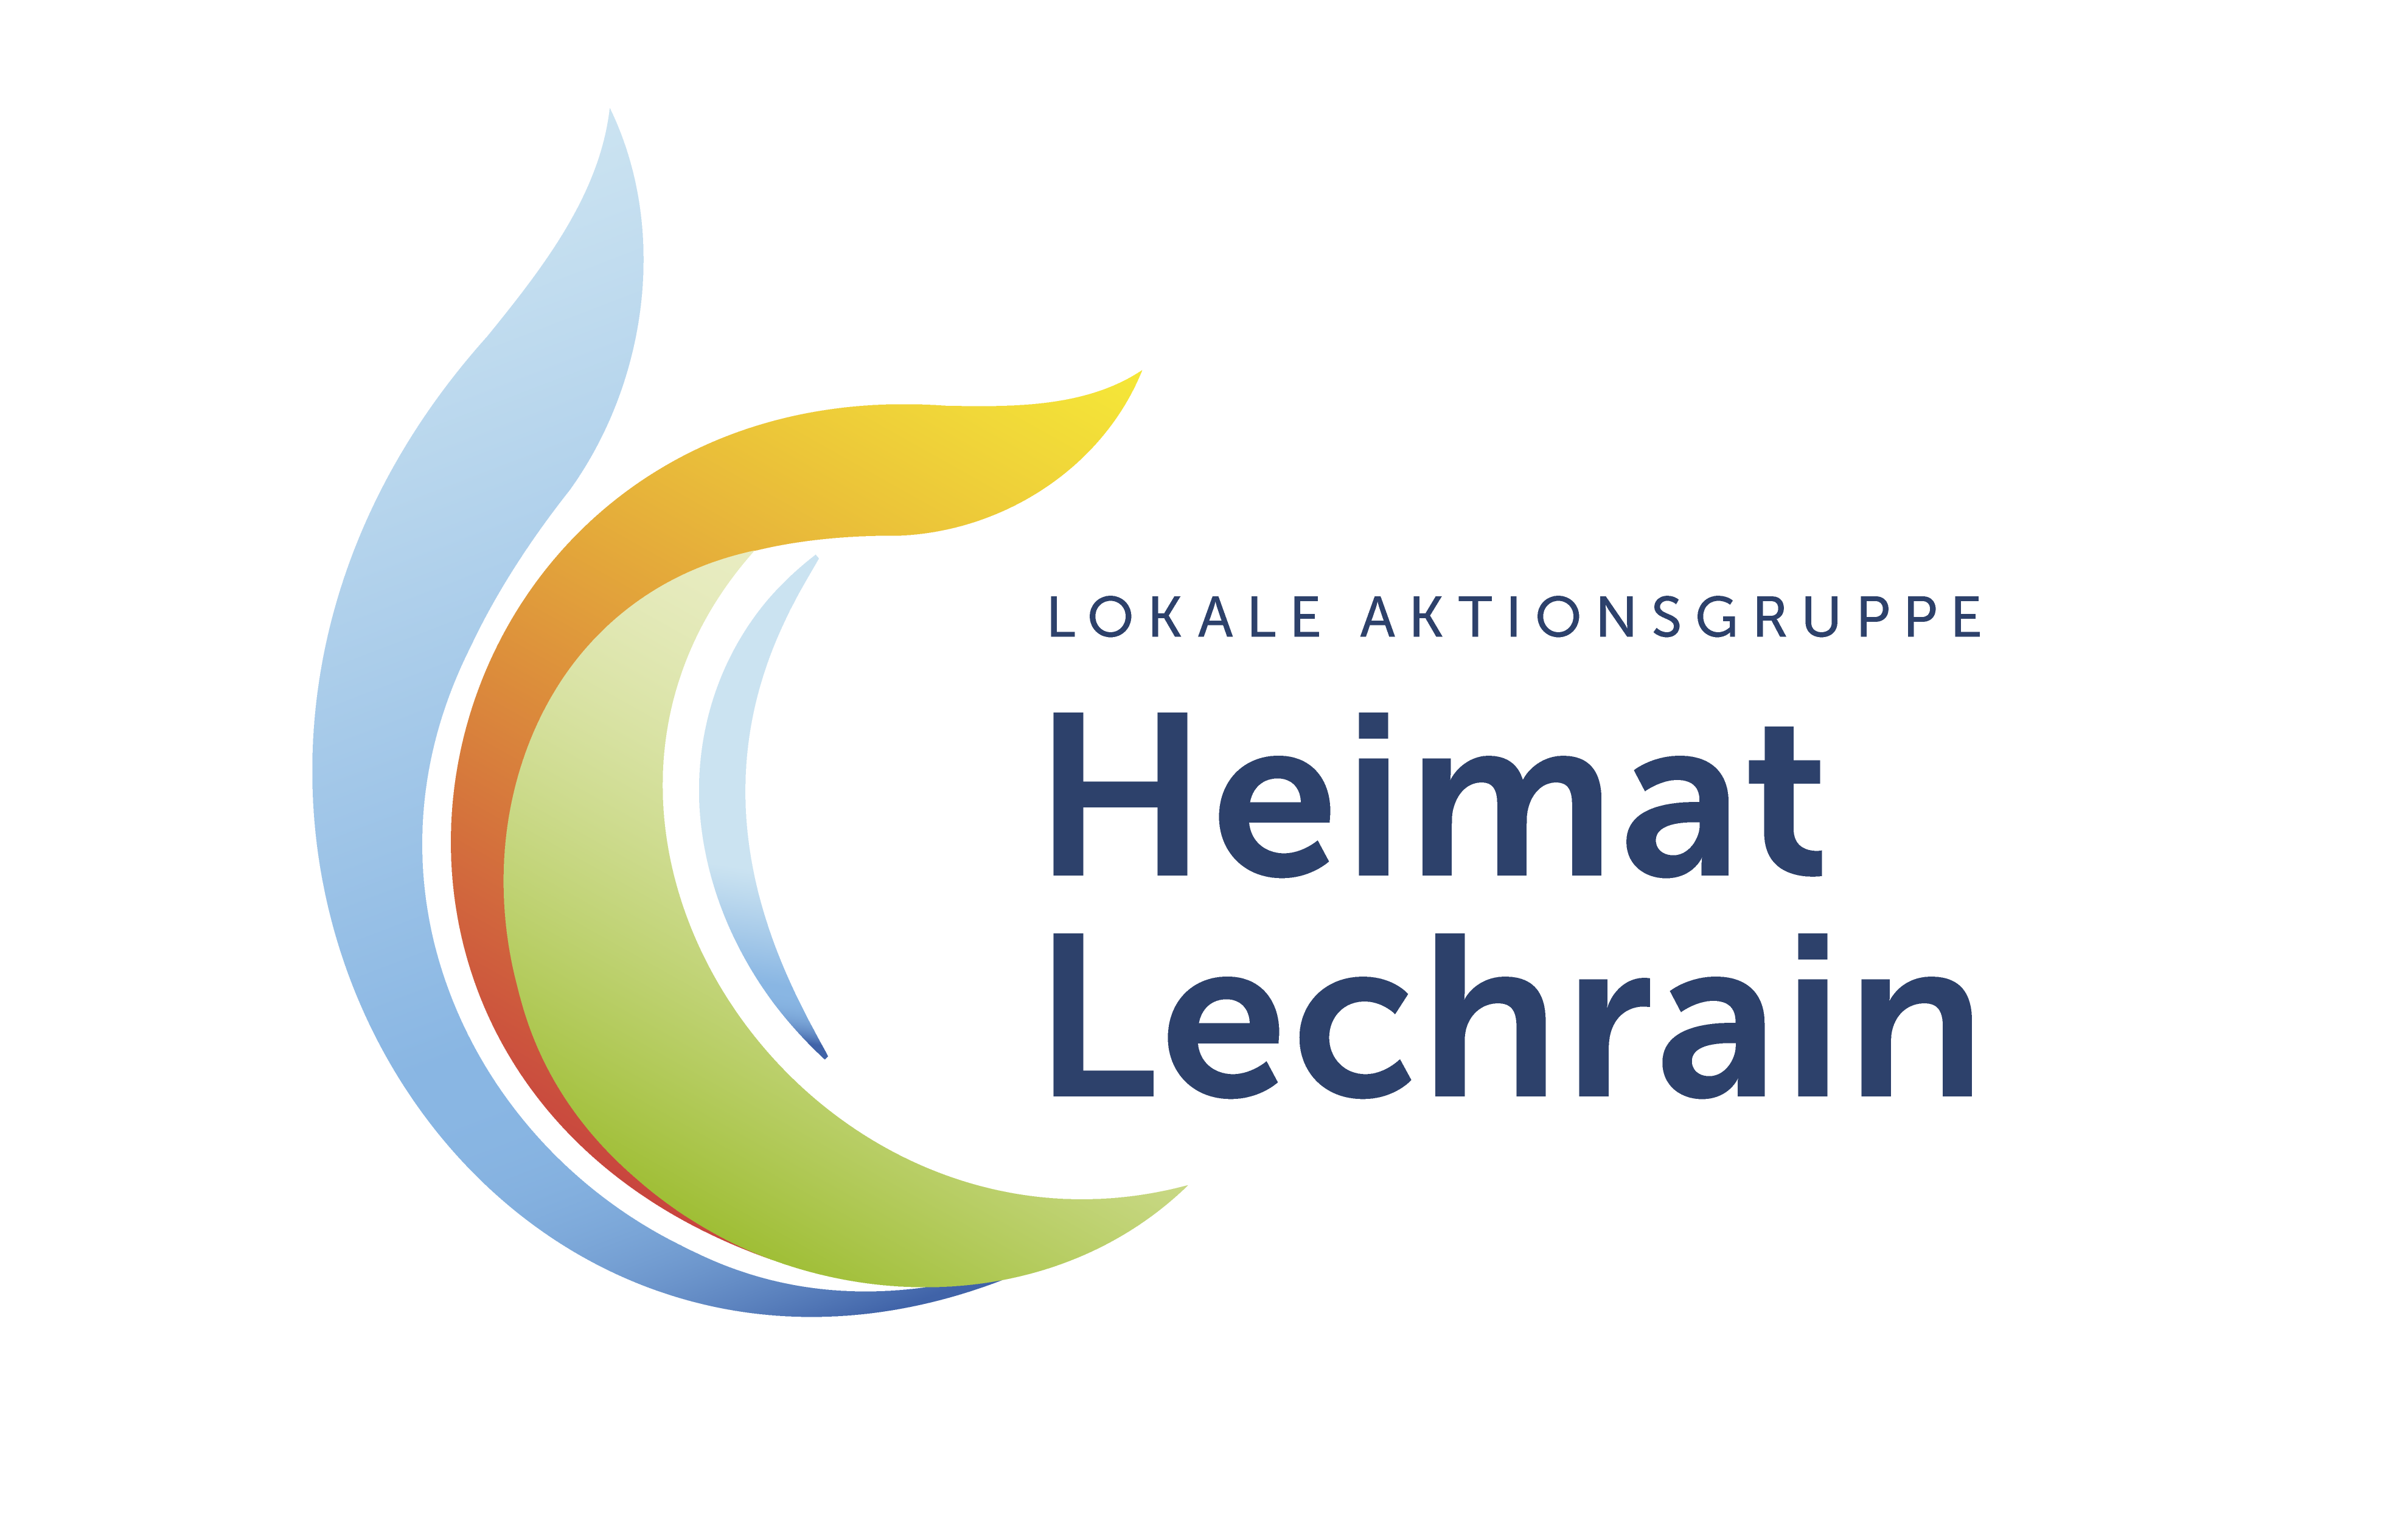 Logo der lokalen Arbeitsgruppe Heimat Lechrain